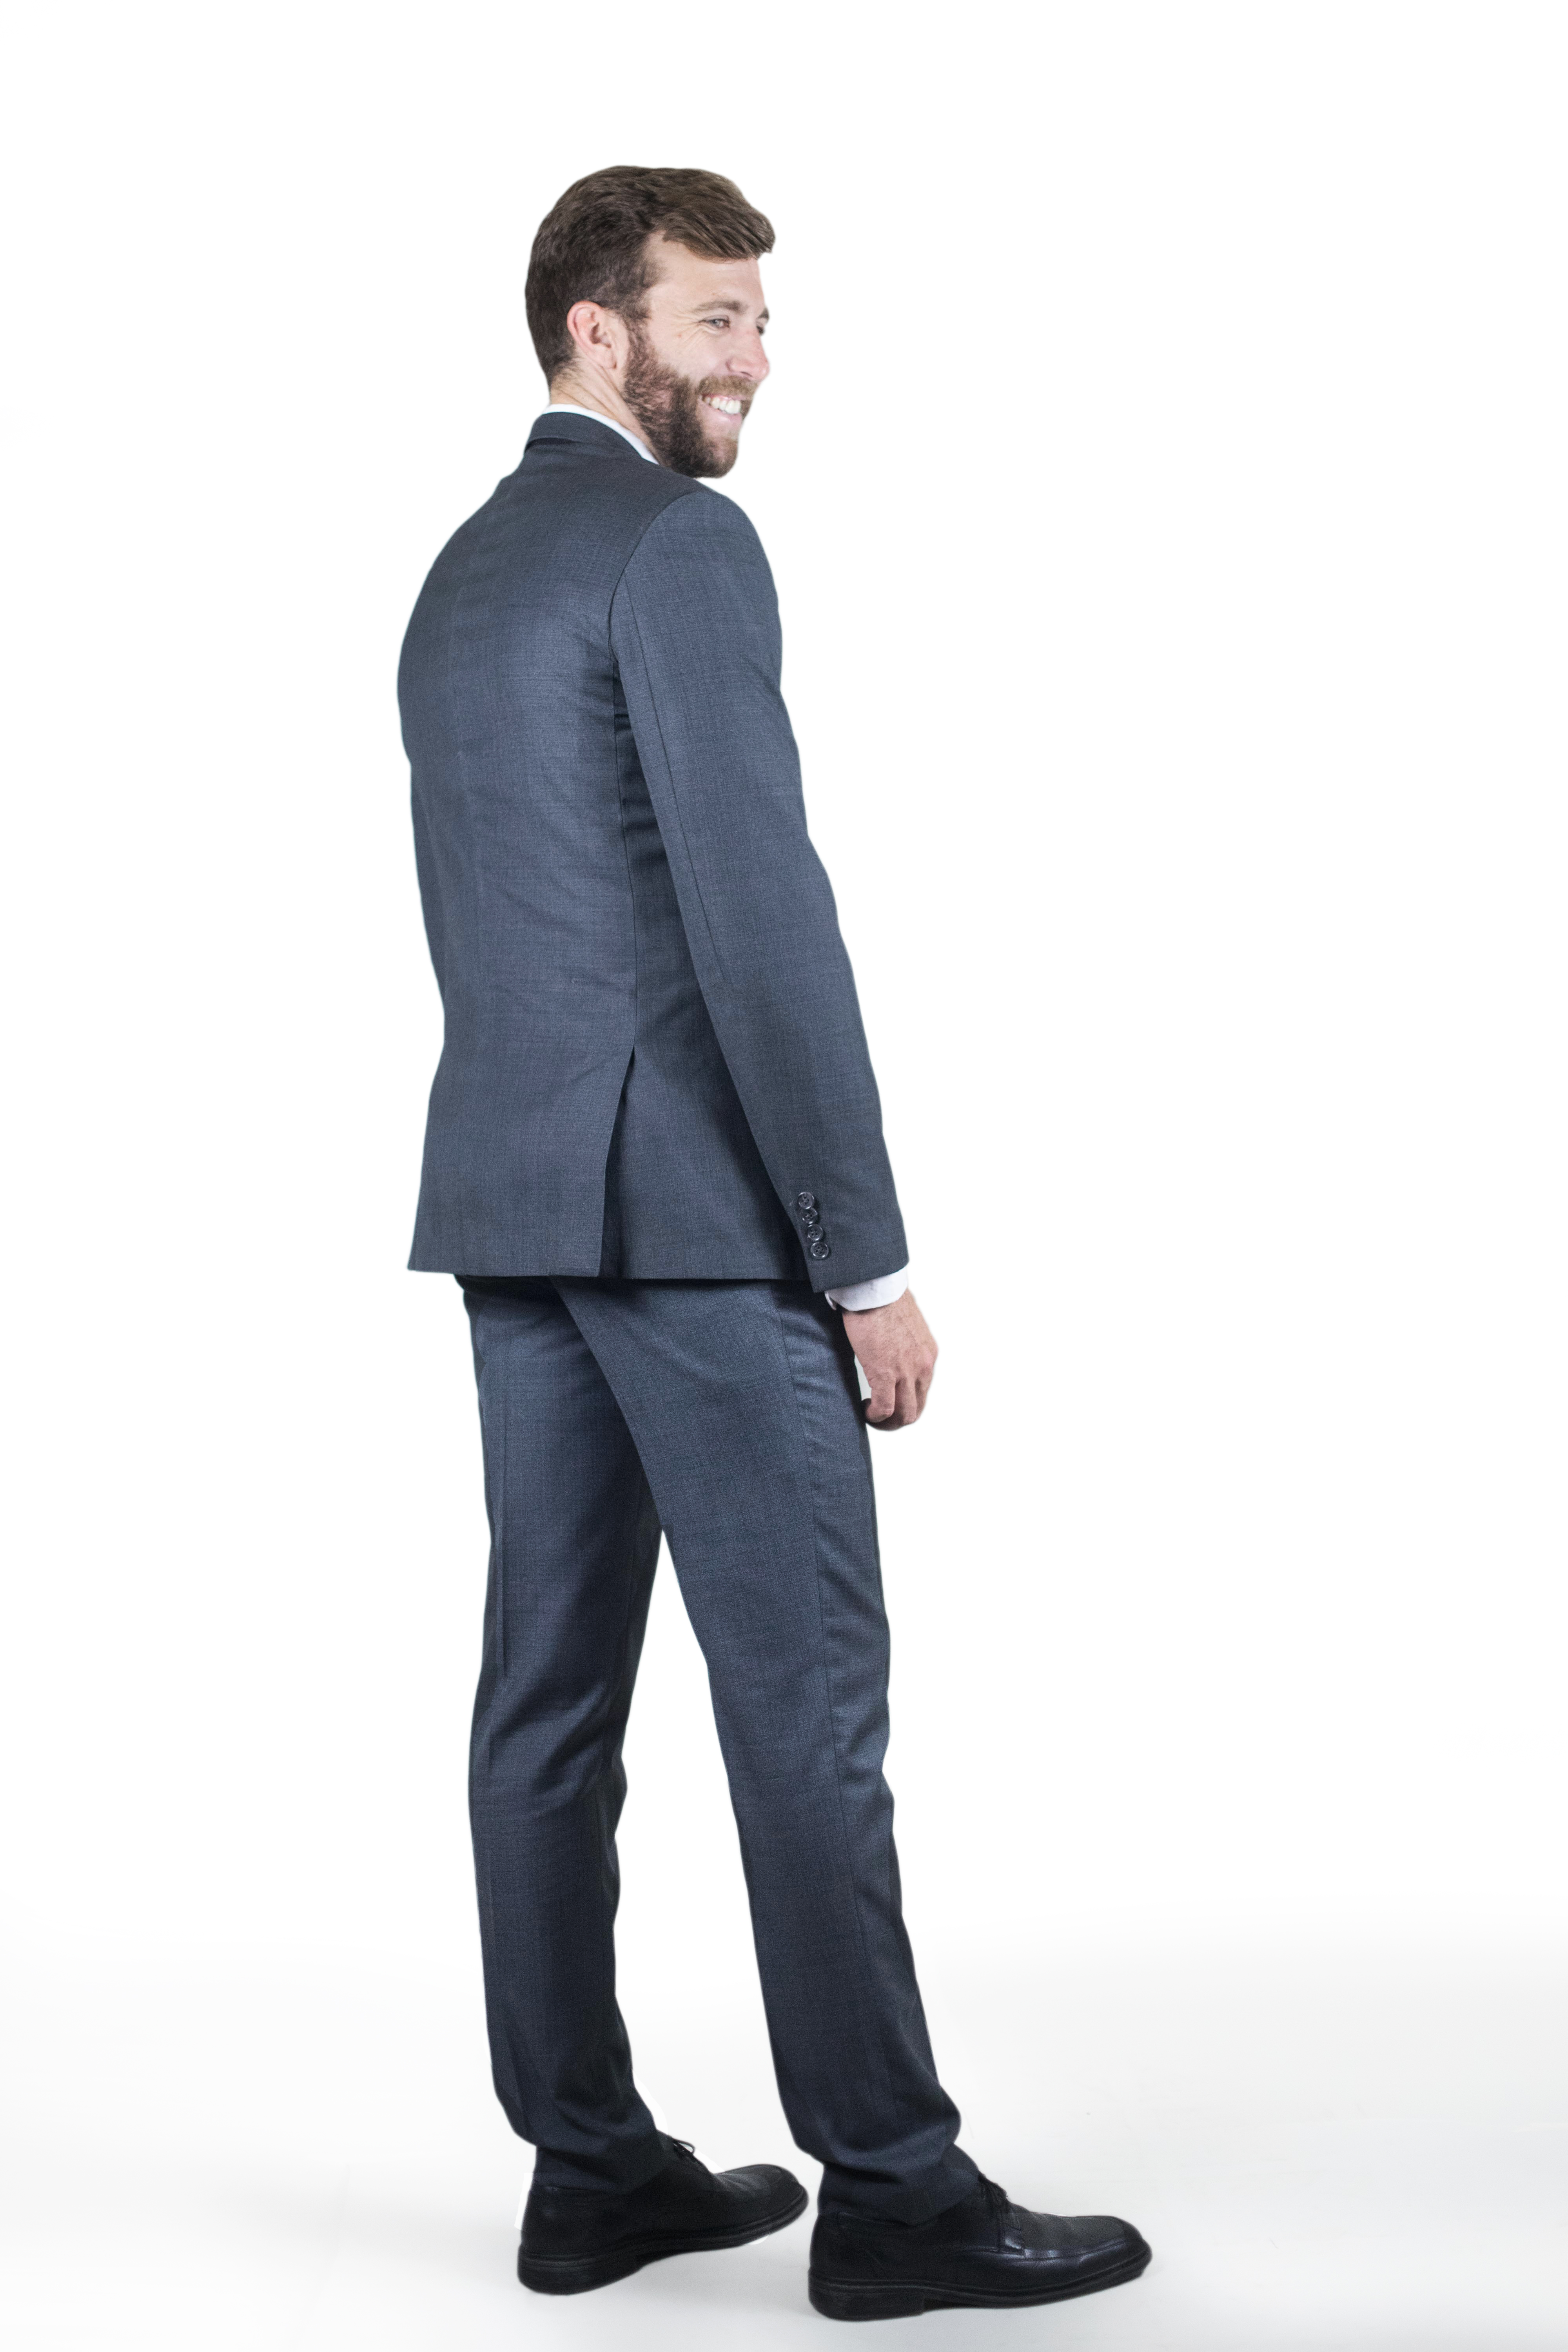 Charcoal Suit – Two-Suits.com